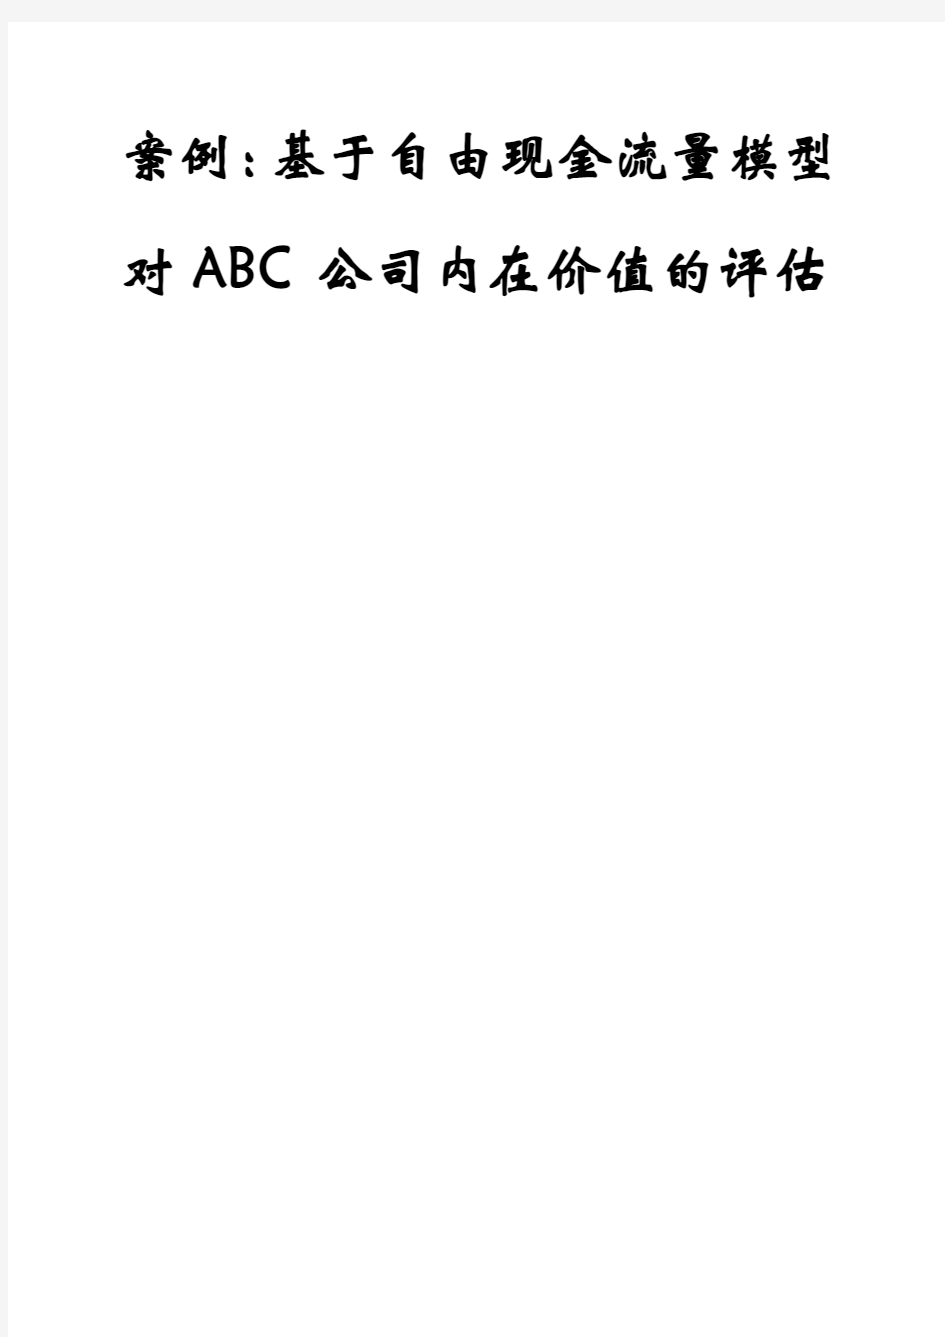 ABC公司价值评估案例分析2013.3.